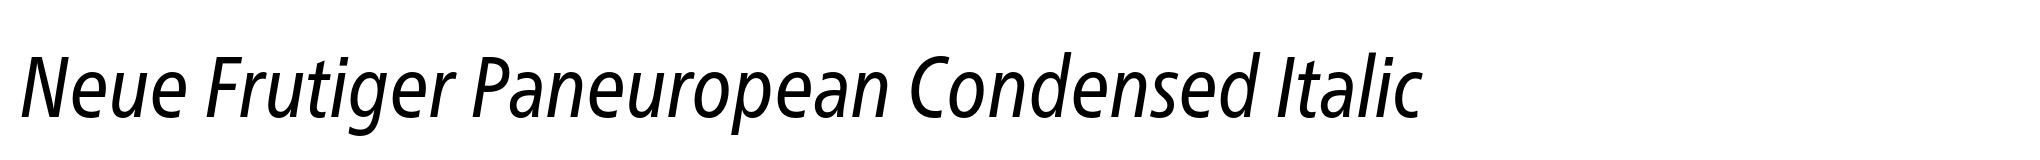 Neue Frutiger Paneuropean Condensed Italic image